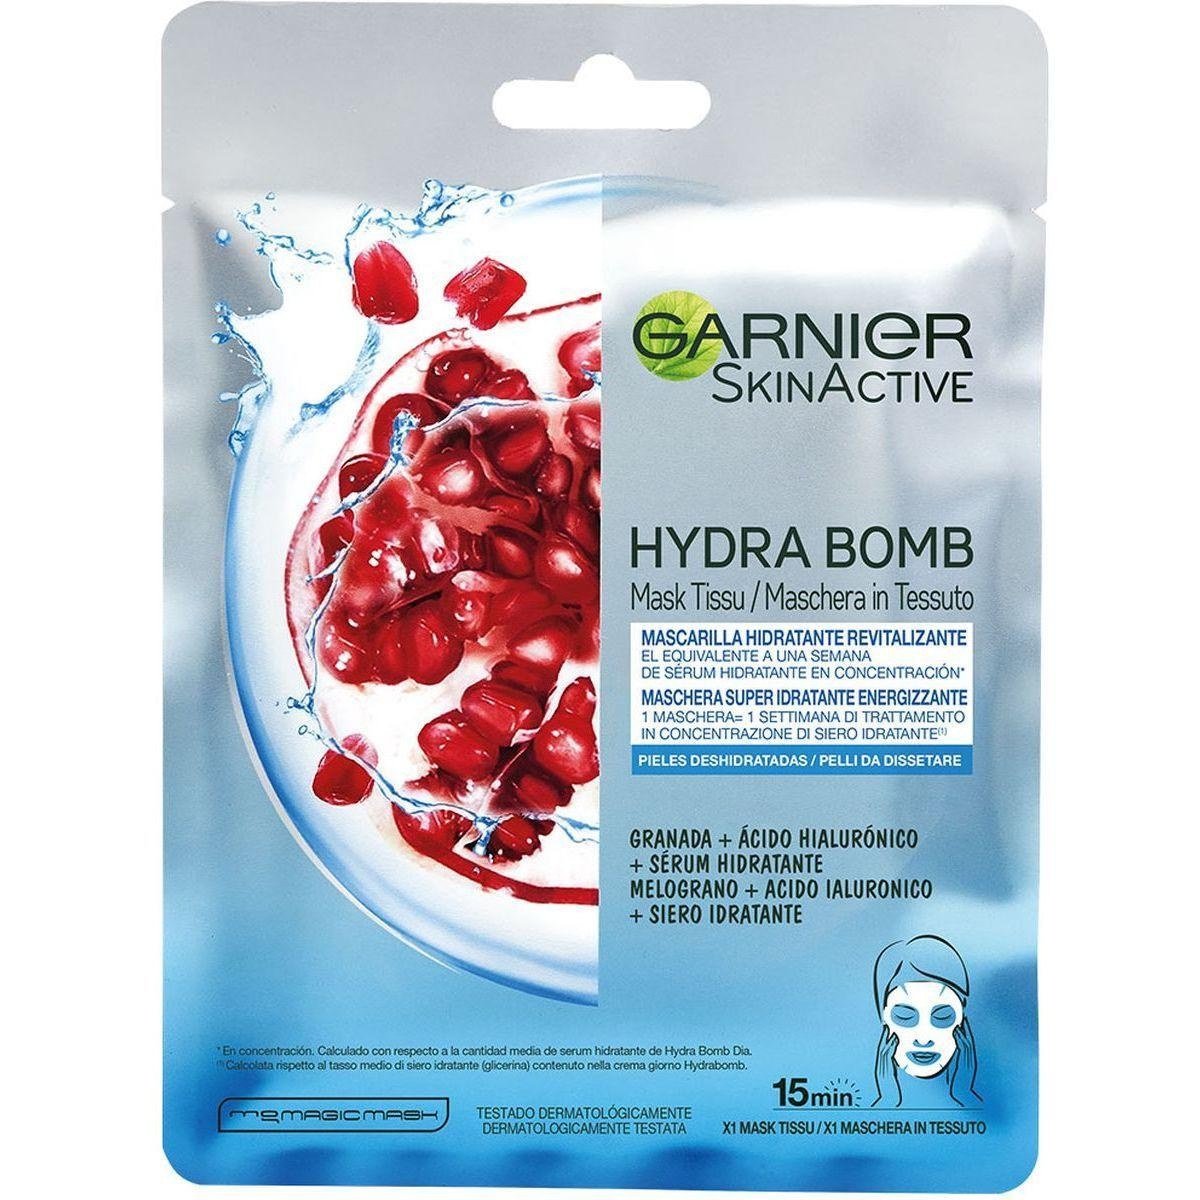 Garnier Skin Active Hydra Bomb Super Idratante Energizzante 32g